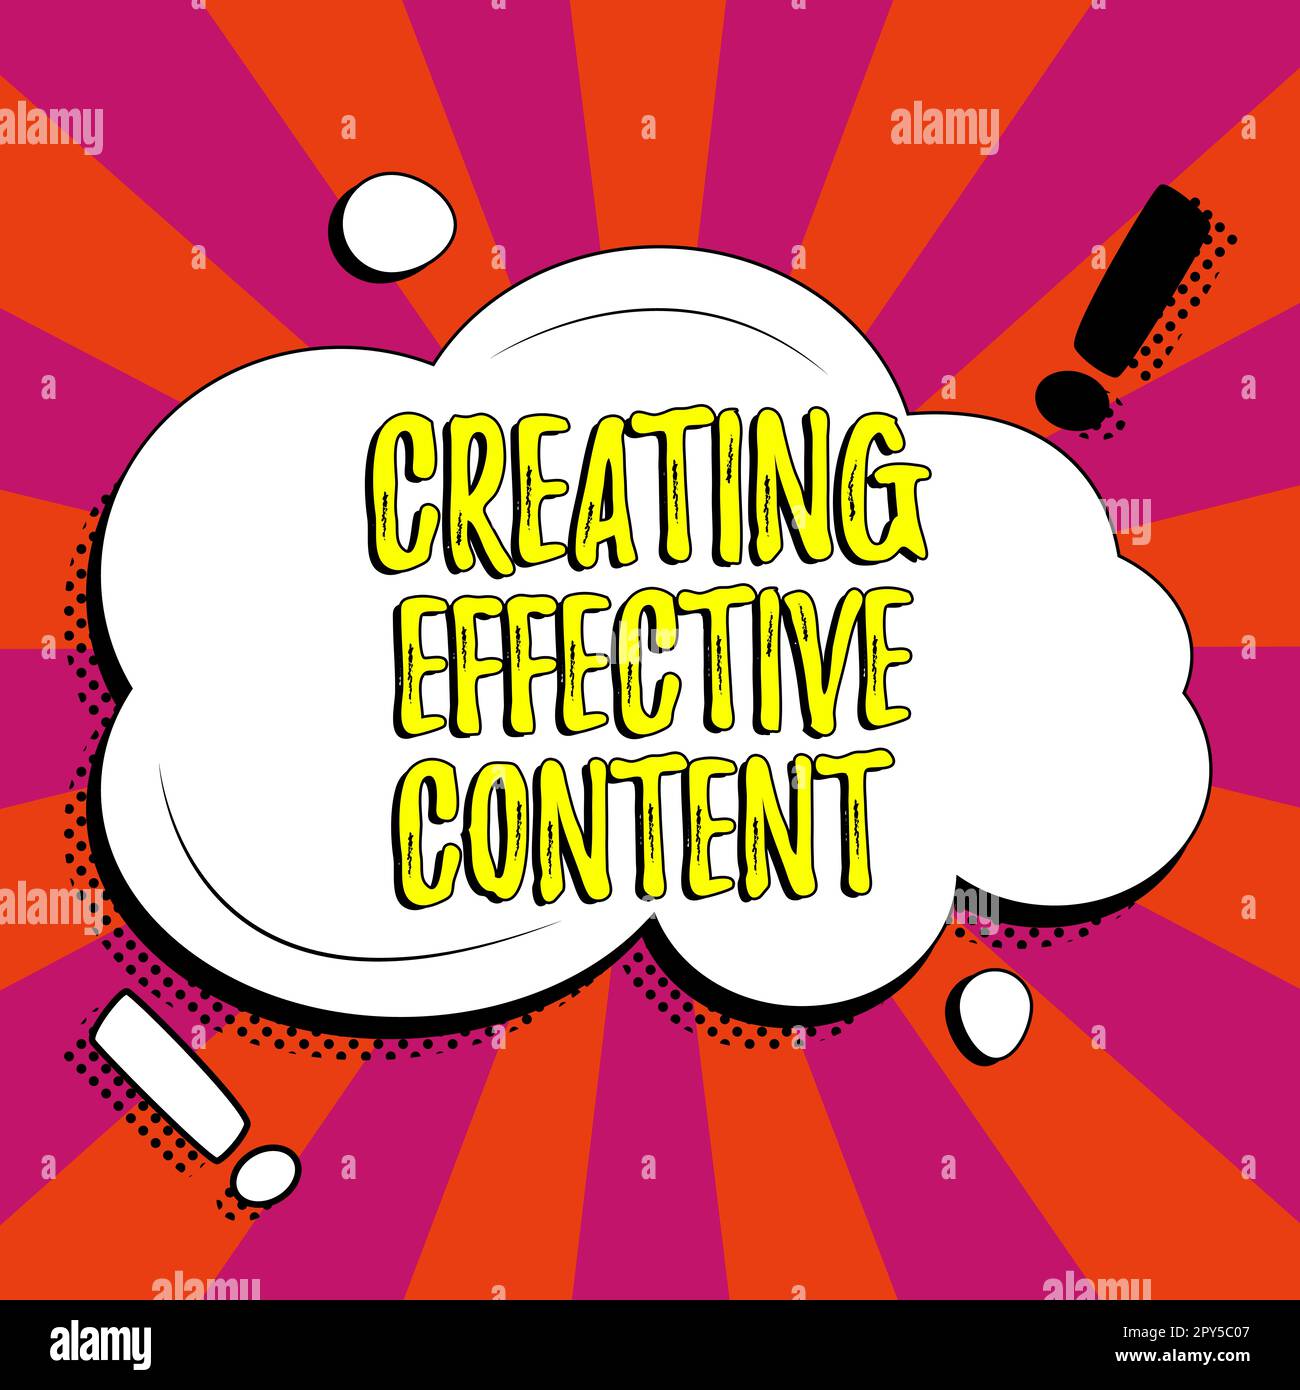 Affichage conceptuel création d'un contenu efficace. Mot pour des informations utiles convivial Banque D'Images